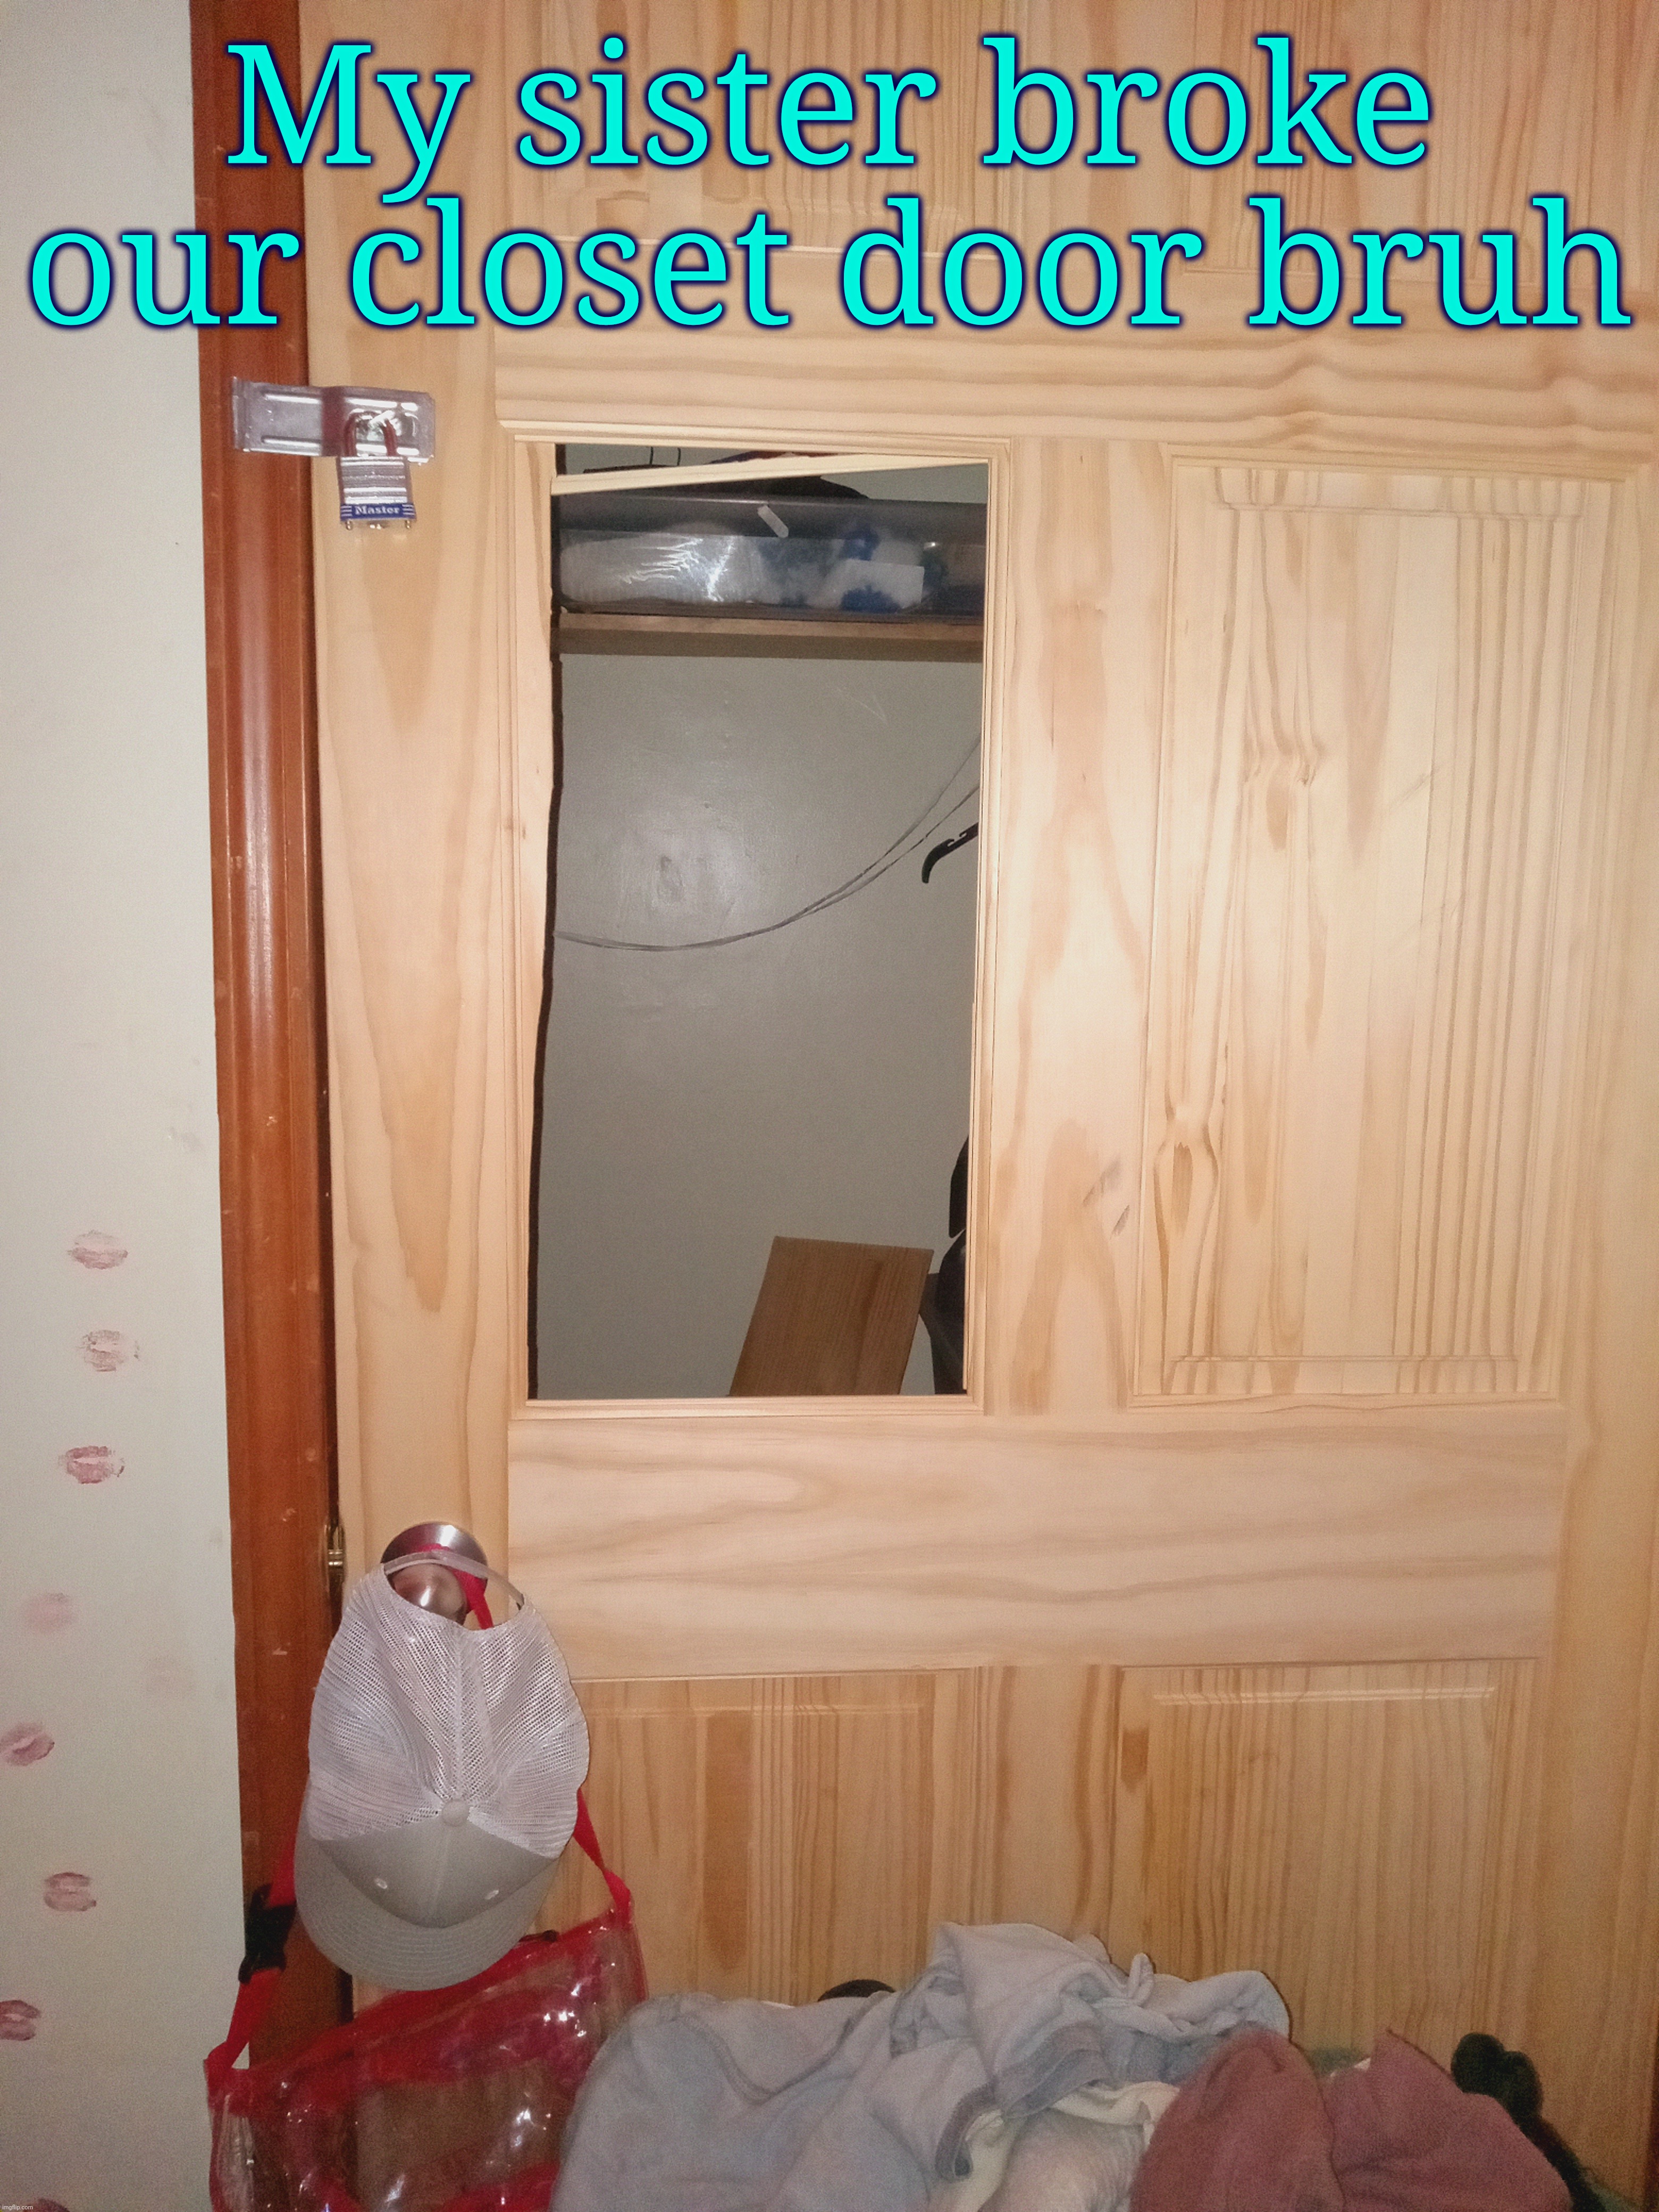 . | My sister broke our closet door bruh | made w/ Imgflip meme maker